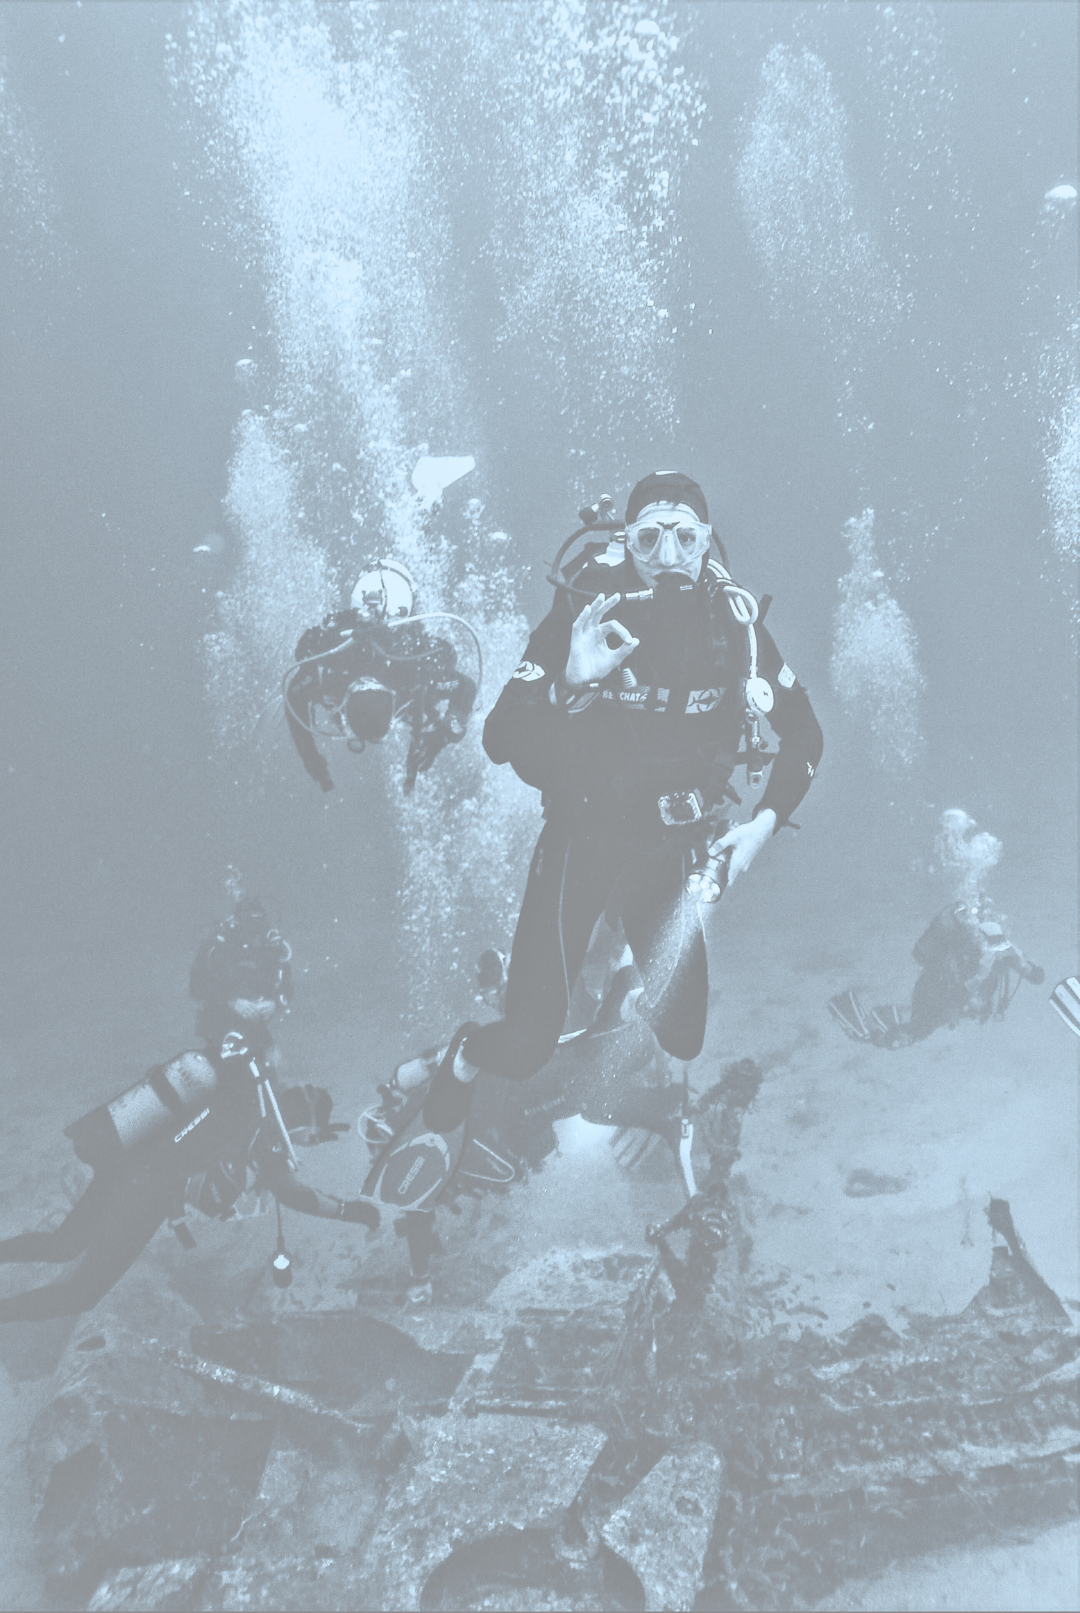 Scuba diving_comunicazione